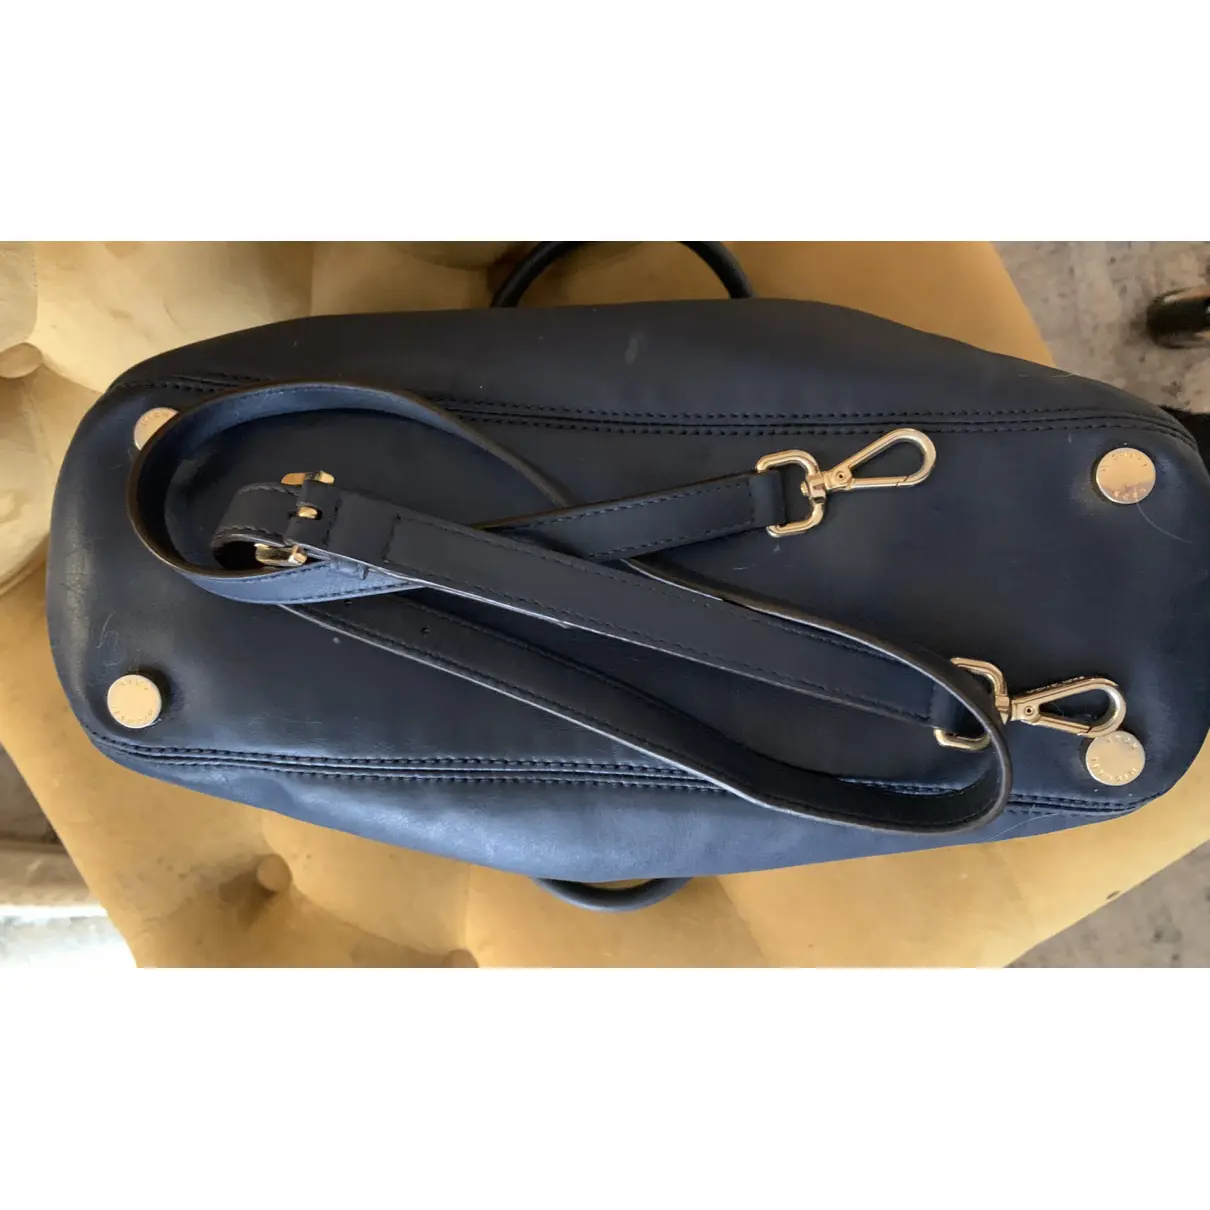 Sutton leather satchel Michael Kors